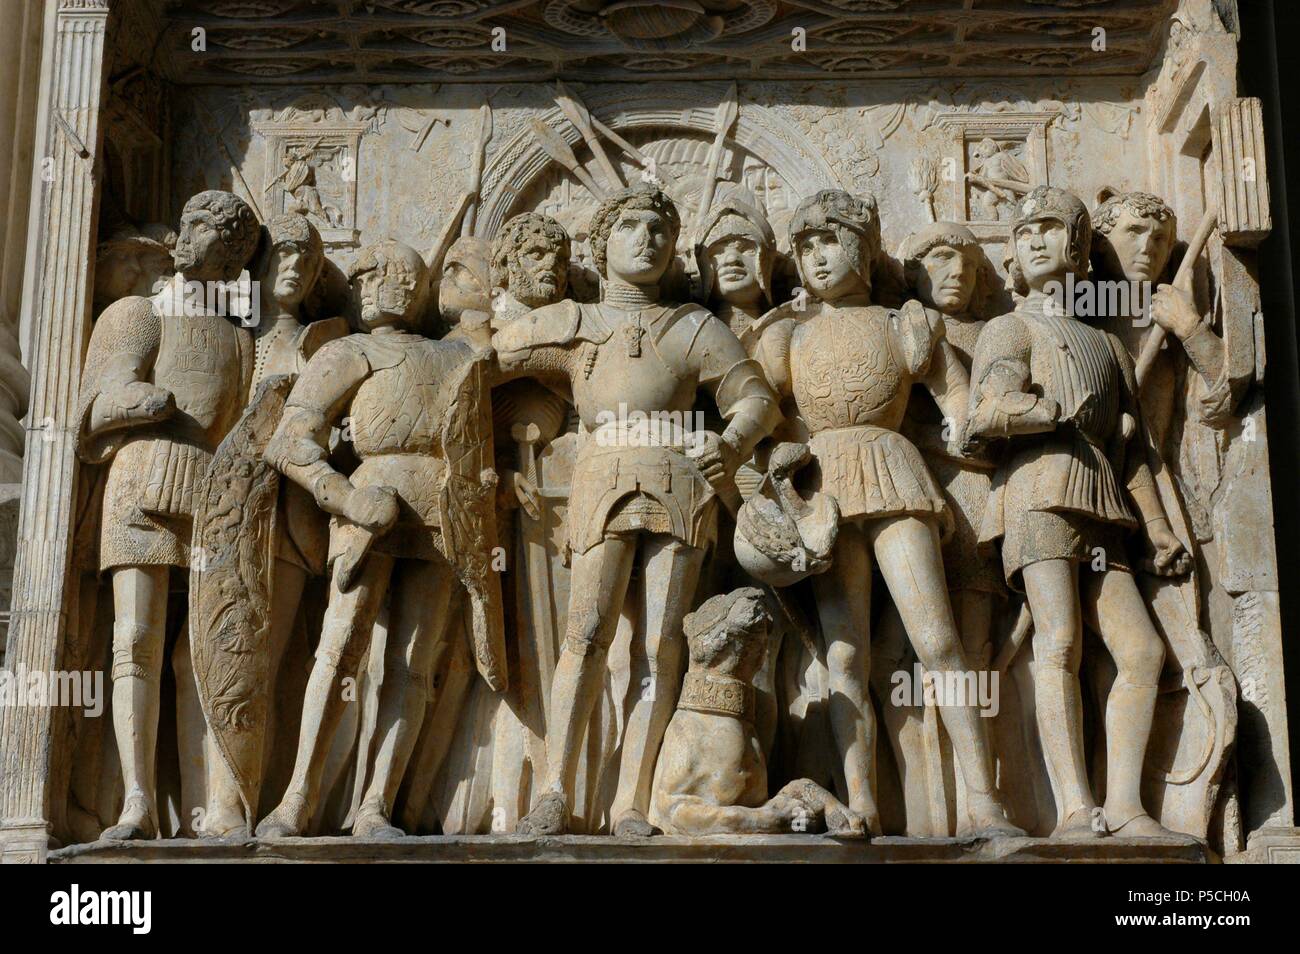 BAJORRELIEVE DEL INTRADOS DEL ARCO DE ALFONSO V DE ARAGON - SIGLO XV - RENACIMIENTO ITALIANO. Author: Francesco Laurana (c. 1430-c. 1502). Location: CASTEL NUOVO, NEAPEL, ITALIA. Stock Photo